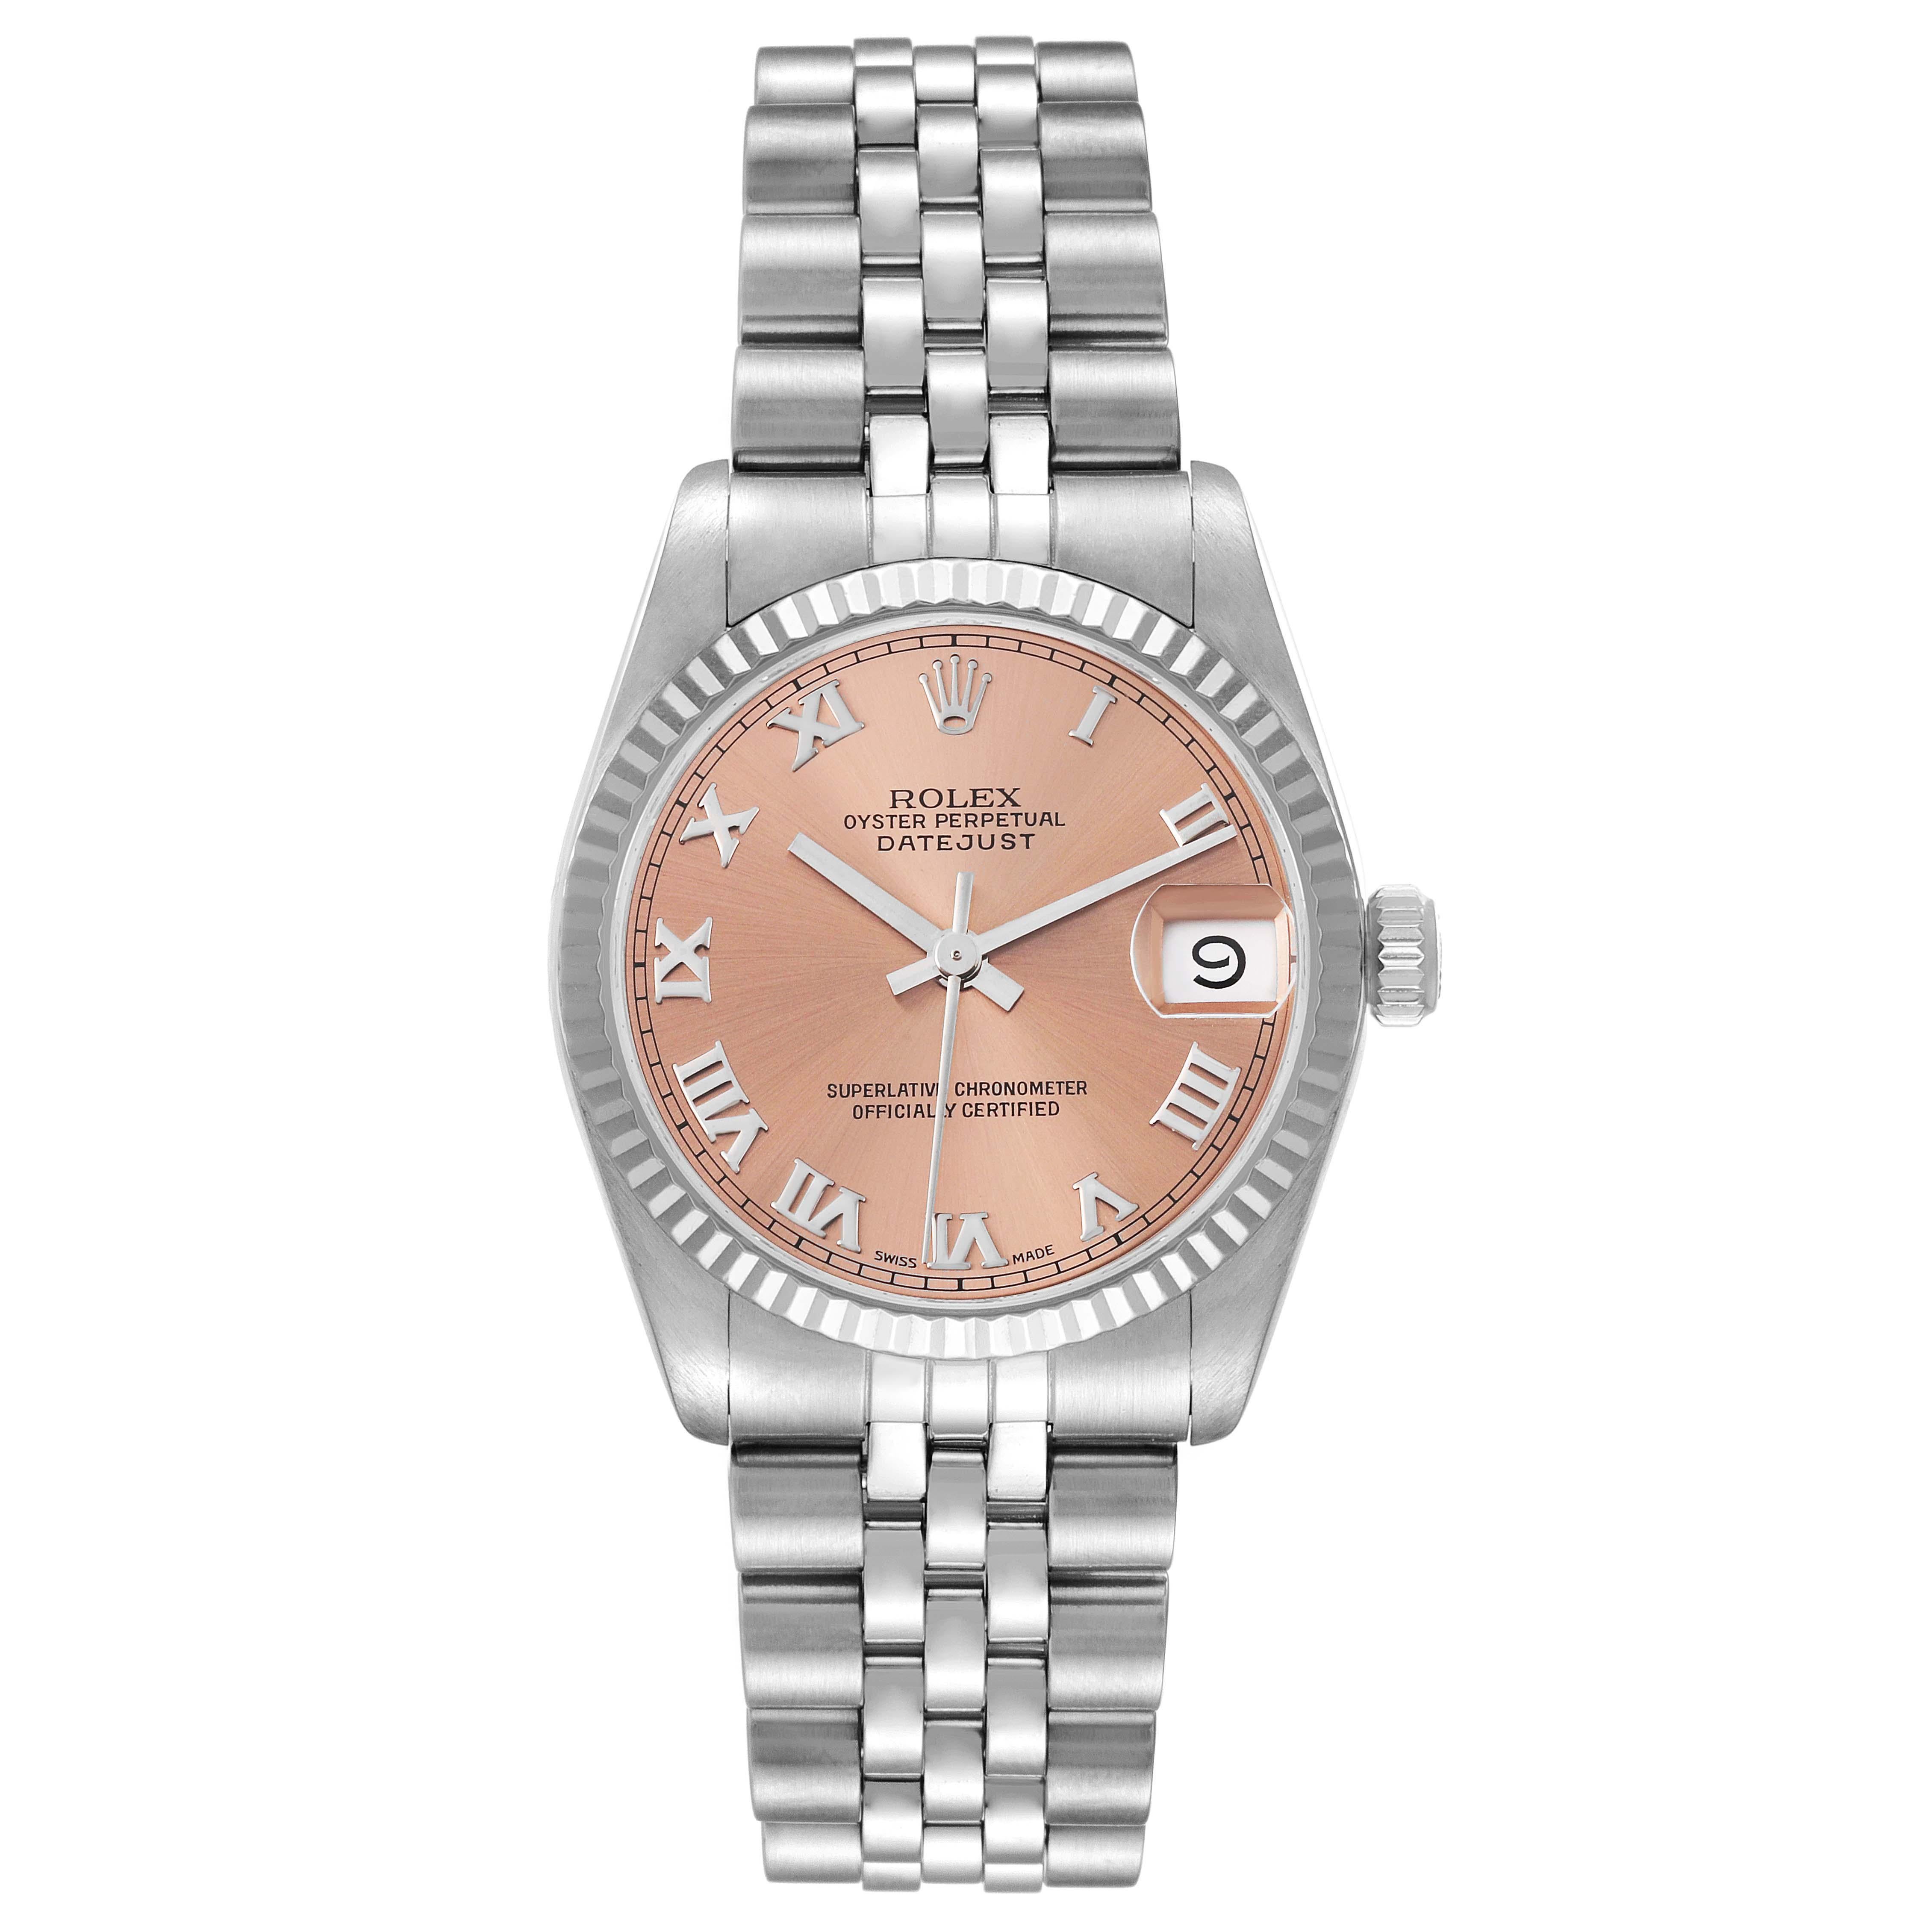 Rolex Datejust Midsize Steel White Gold Salmon Dial Ladies Watch 68274. Mouvement automatique à remontage automatique, officiellement certifié chronomètre. Boîtier oyster en acier inoxydable de 31.0 mm de diamètre. Logo Rolex sur la couronne.